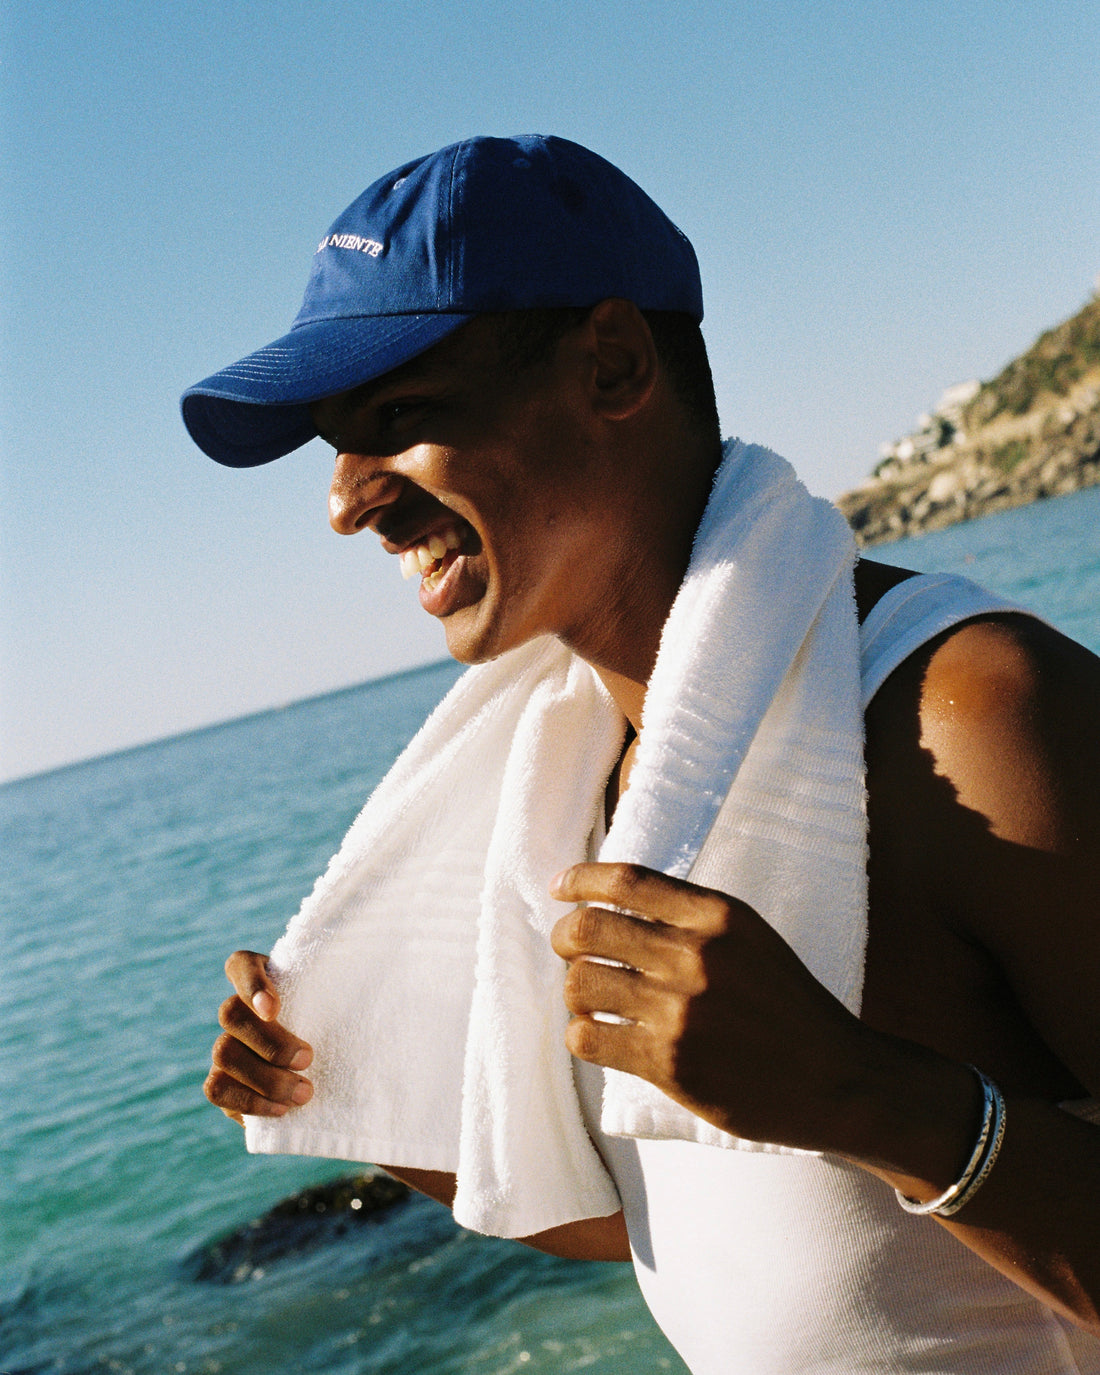 Lachender Mann am Strand mit Blauem Cap und weissem Tuch um den Hals